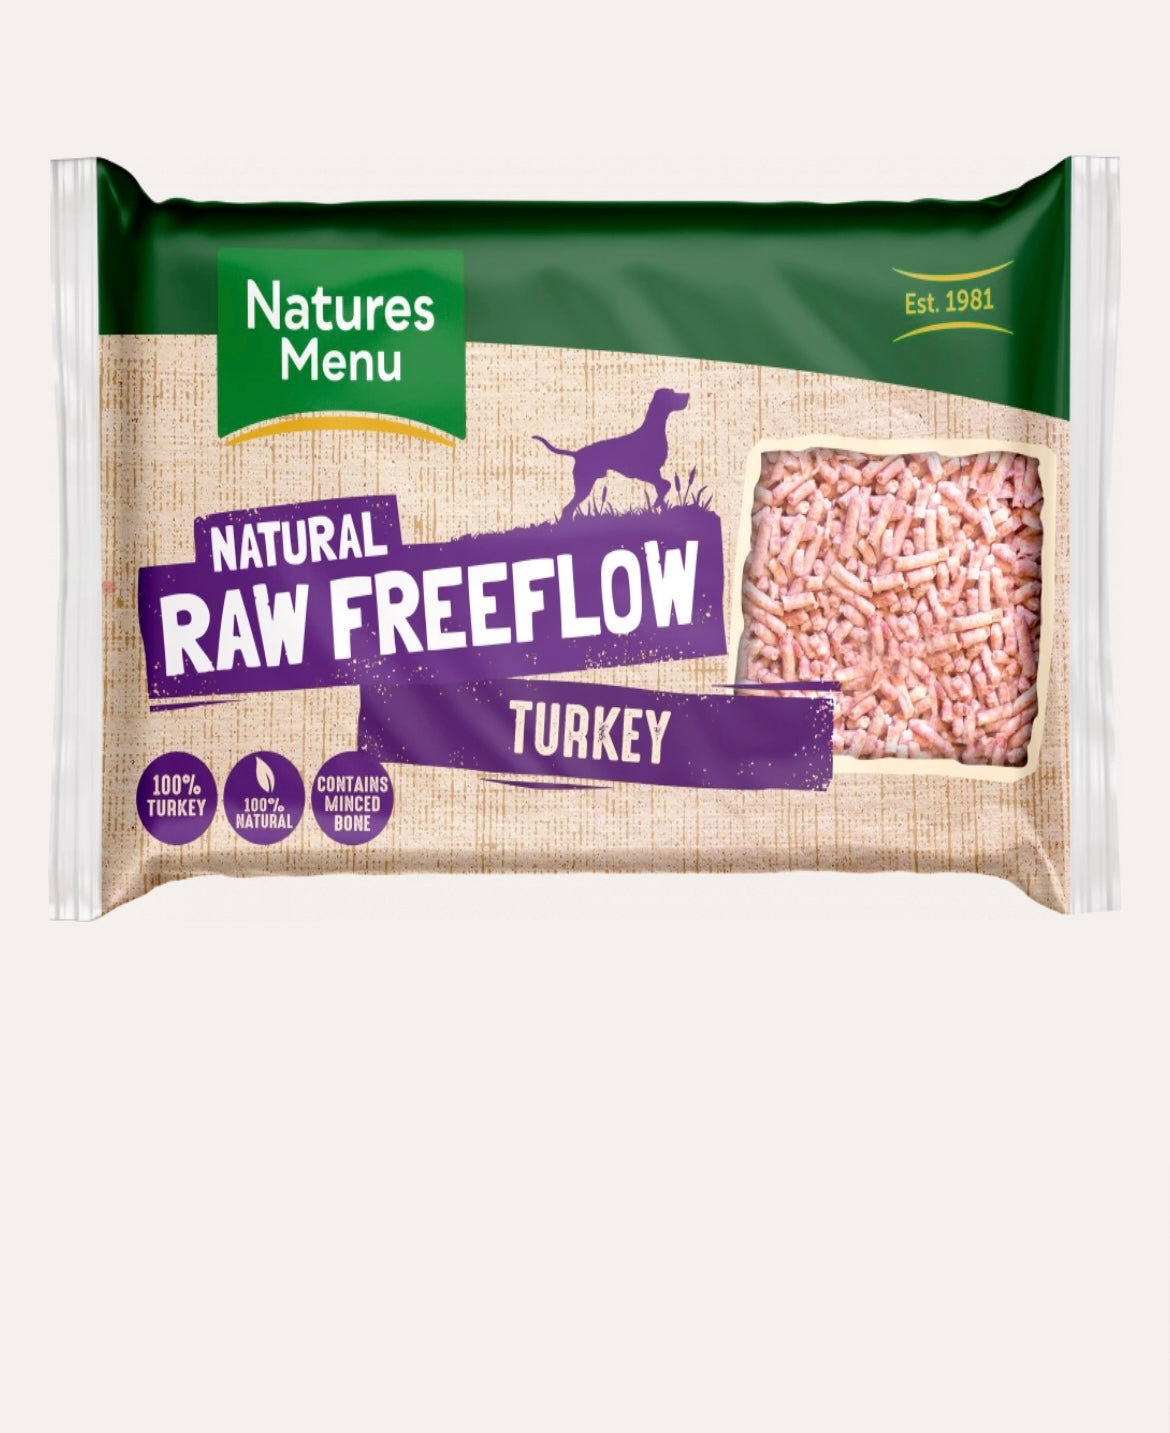 Turkey freeflow natures menu raw 2kg